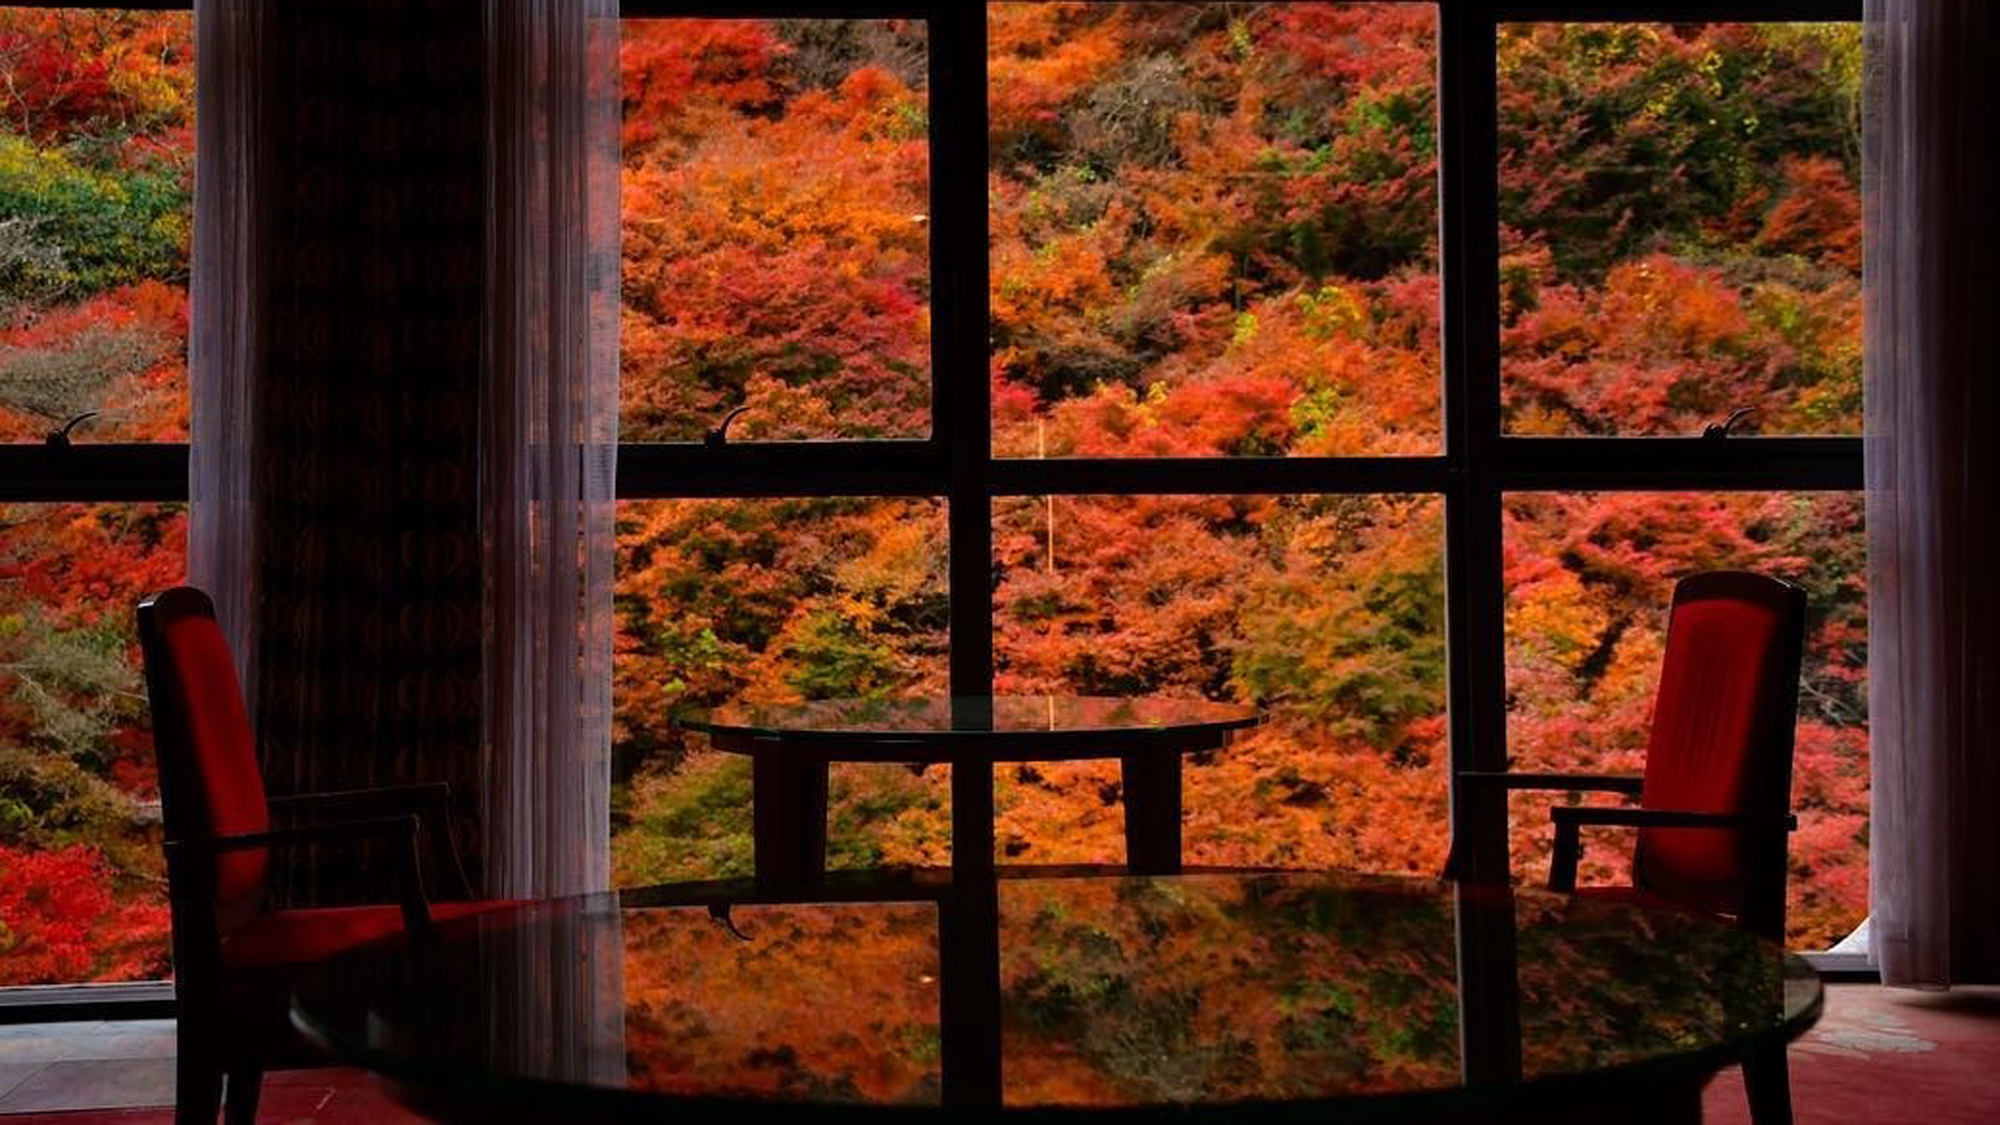 【秋】幻想的な紅葉景色に酔いしれて。アートのような景色をお楽しみ下さい。